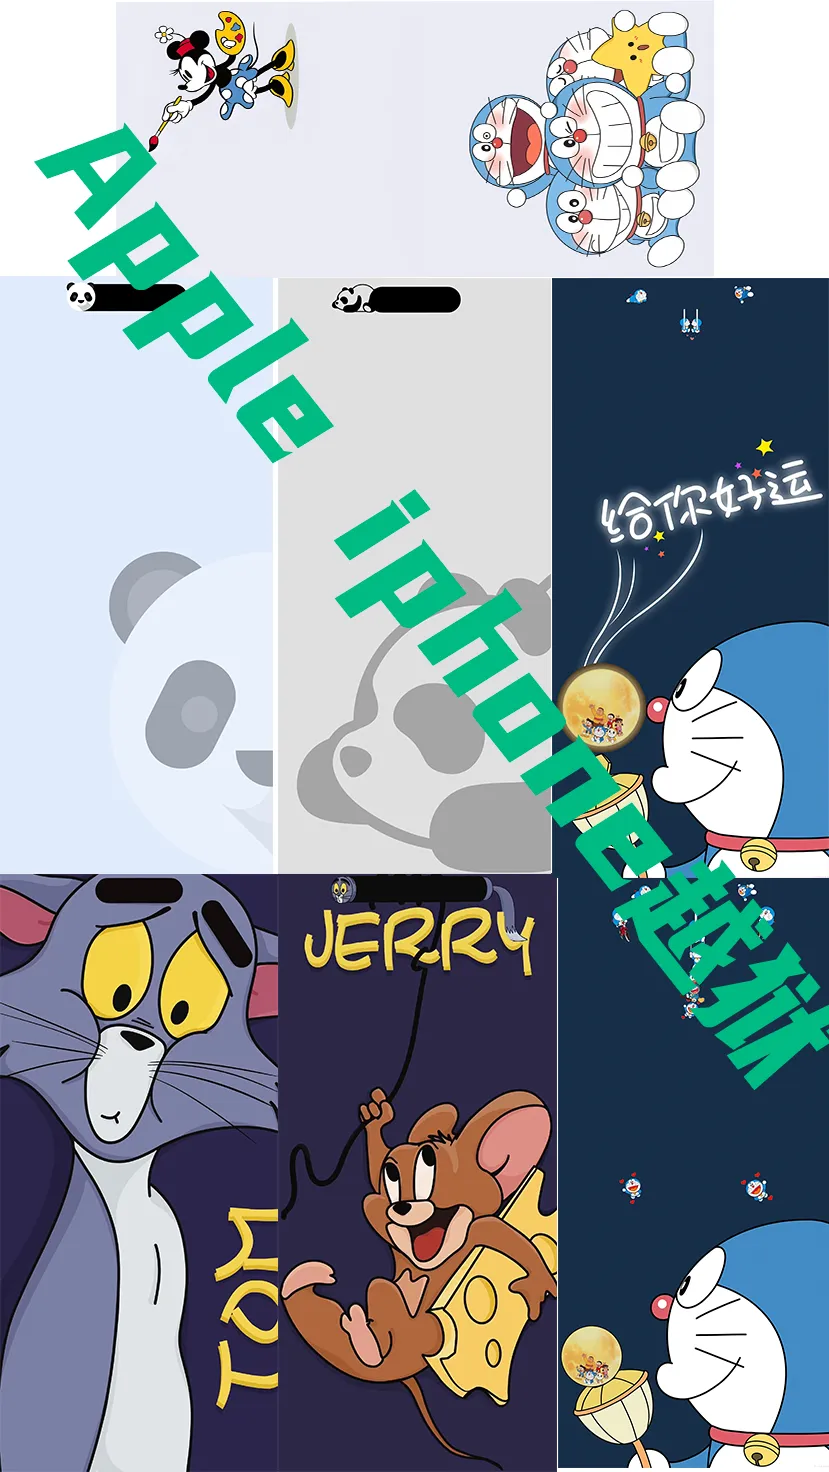 多啦A梦 Panda Tom Jerry猫和老鼠系列超高清壁纸原图